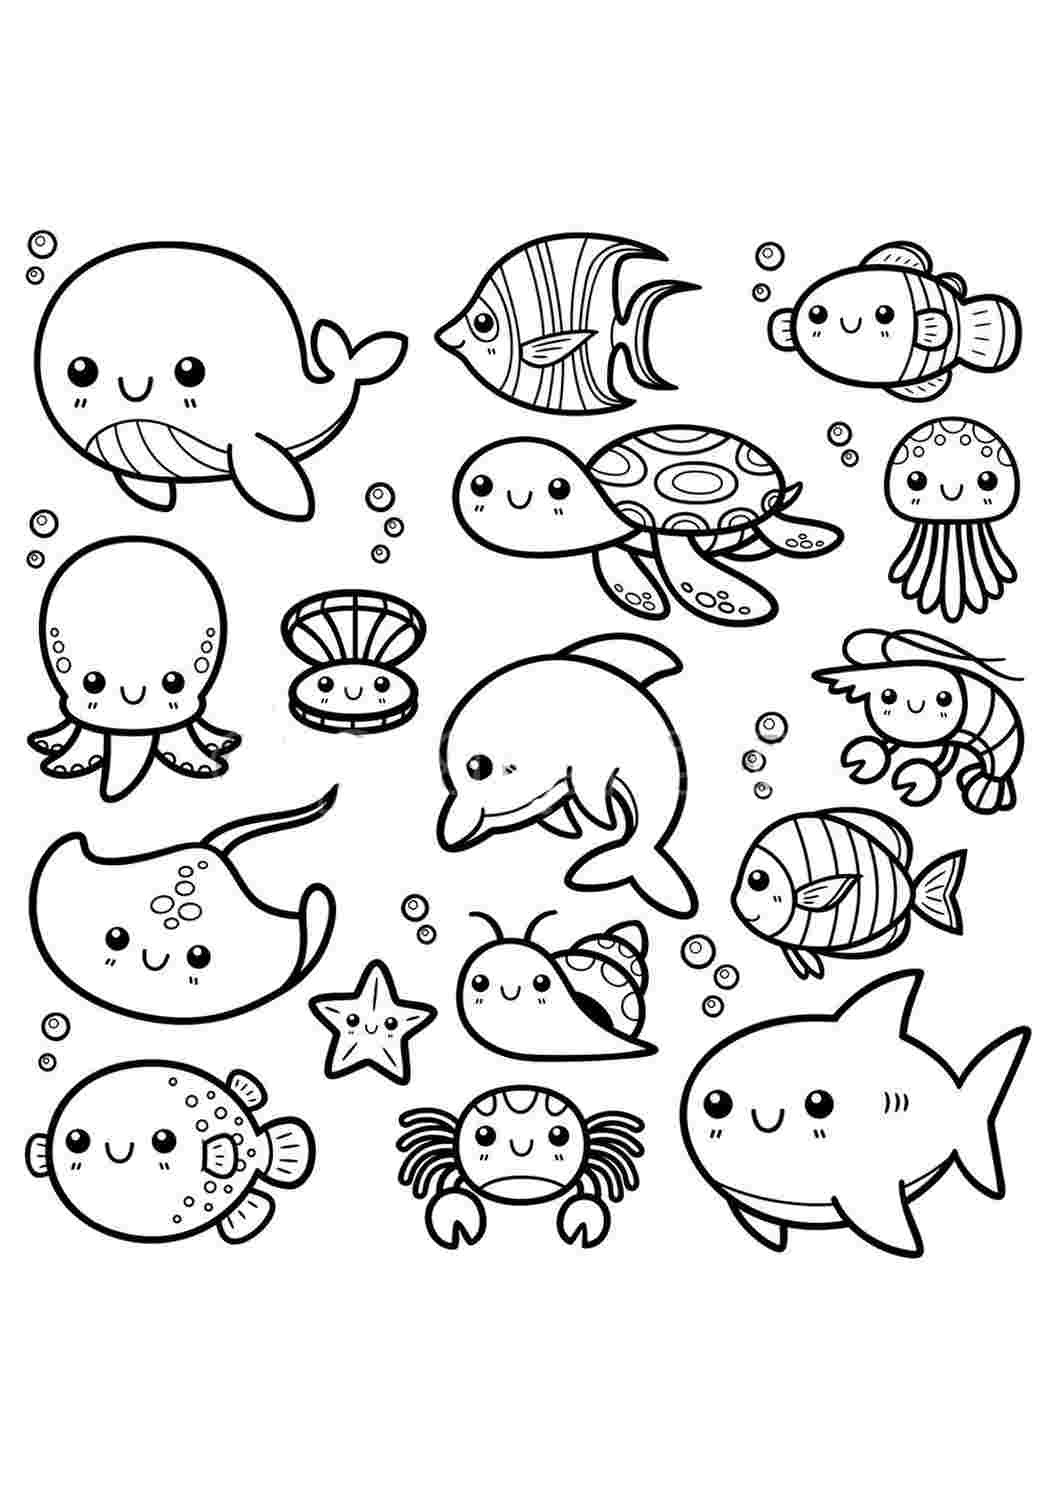 Распечатать для маленьких детей раскраски с морскими животными и рыбами